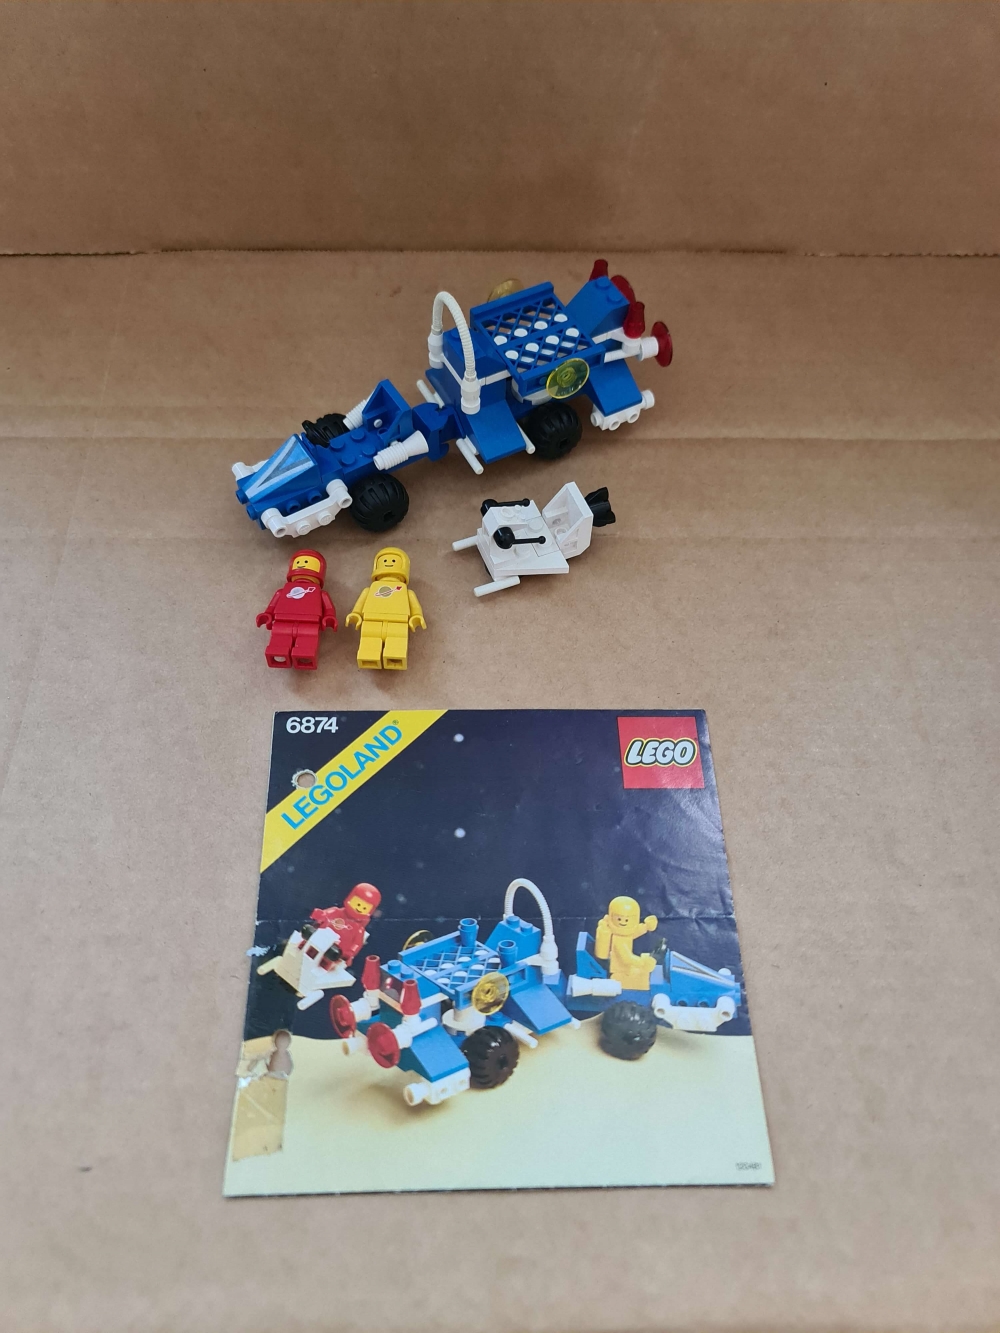 Sett 6874 fra Lego Classic Space serien.
Flott sett.
Komplett med manual.